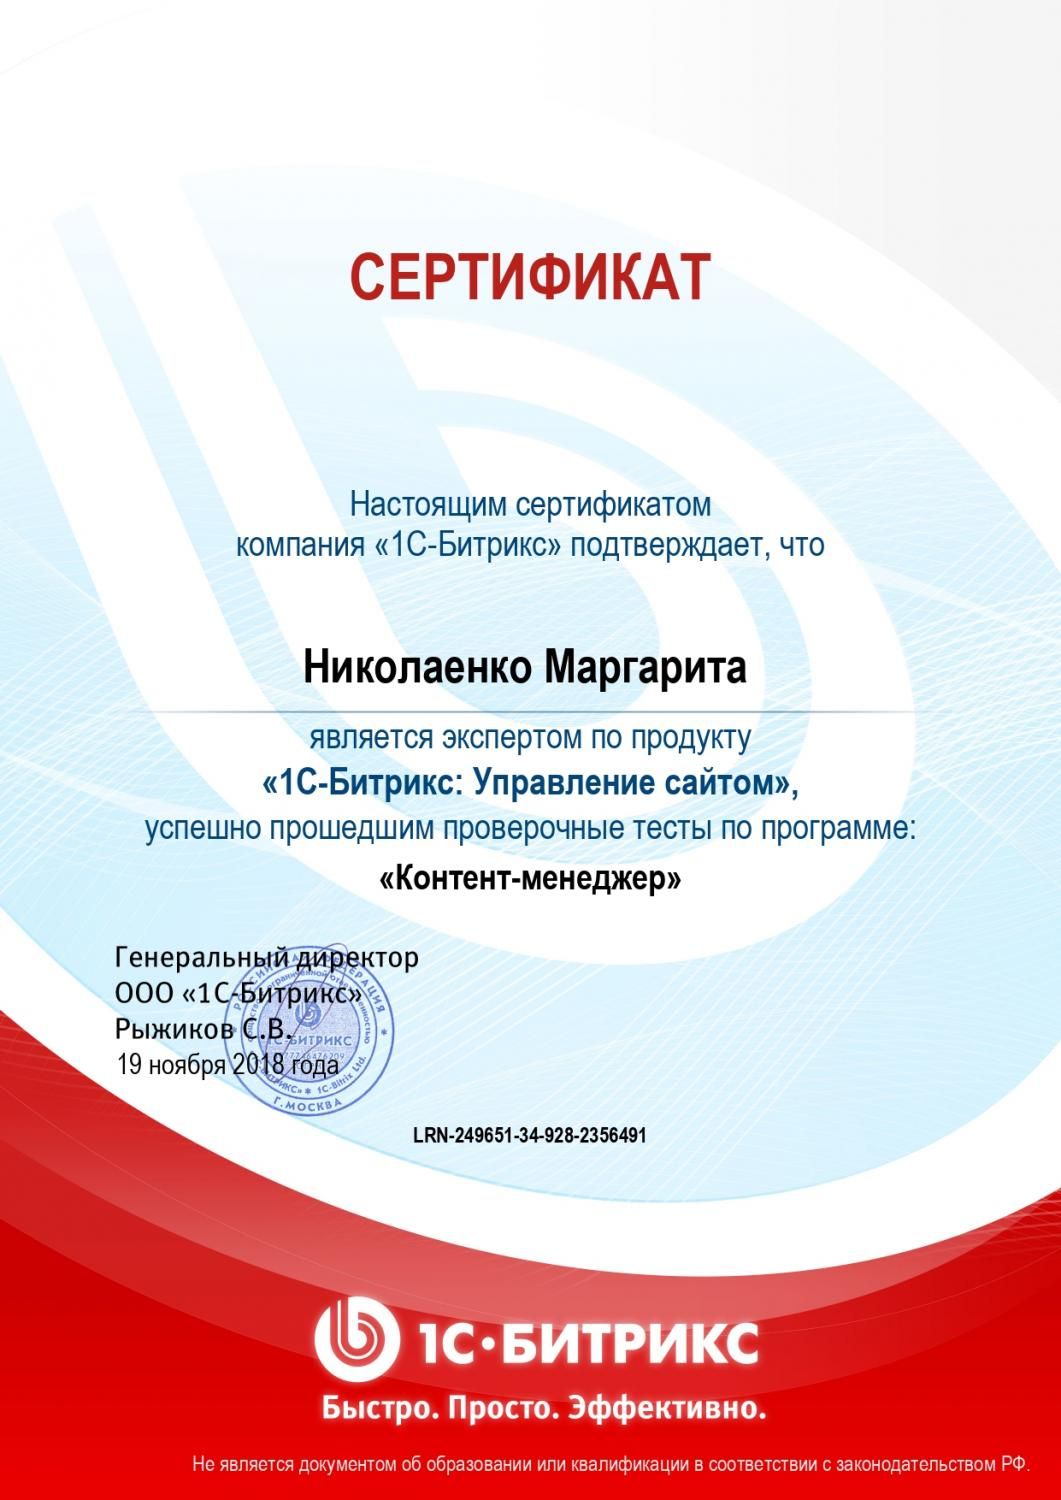 Сертификат эксперта по программе "Контент-менеджер" - Николаенко М. в Екатеринбурга